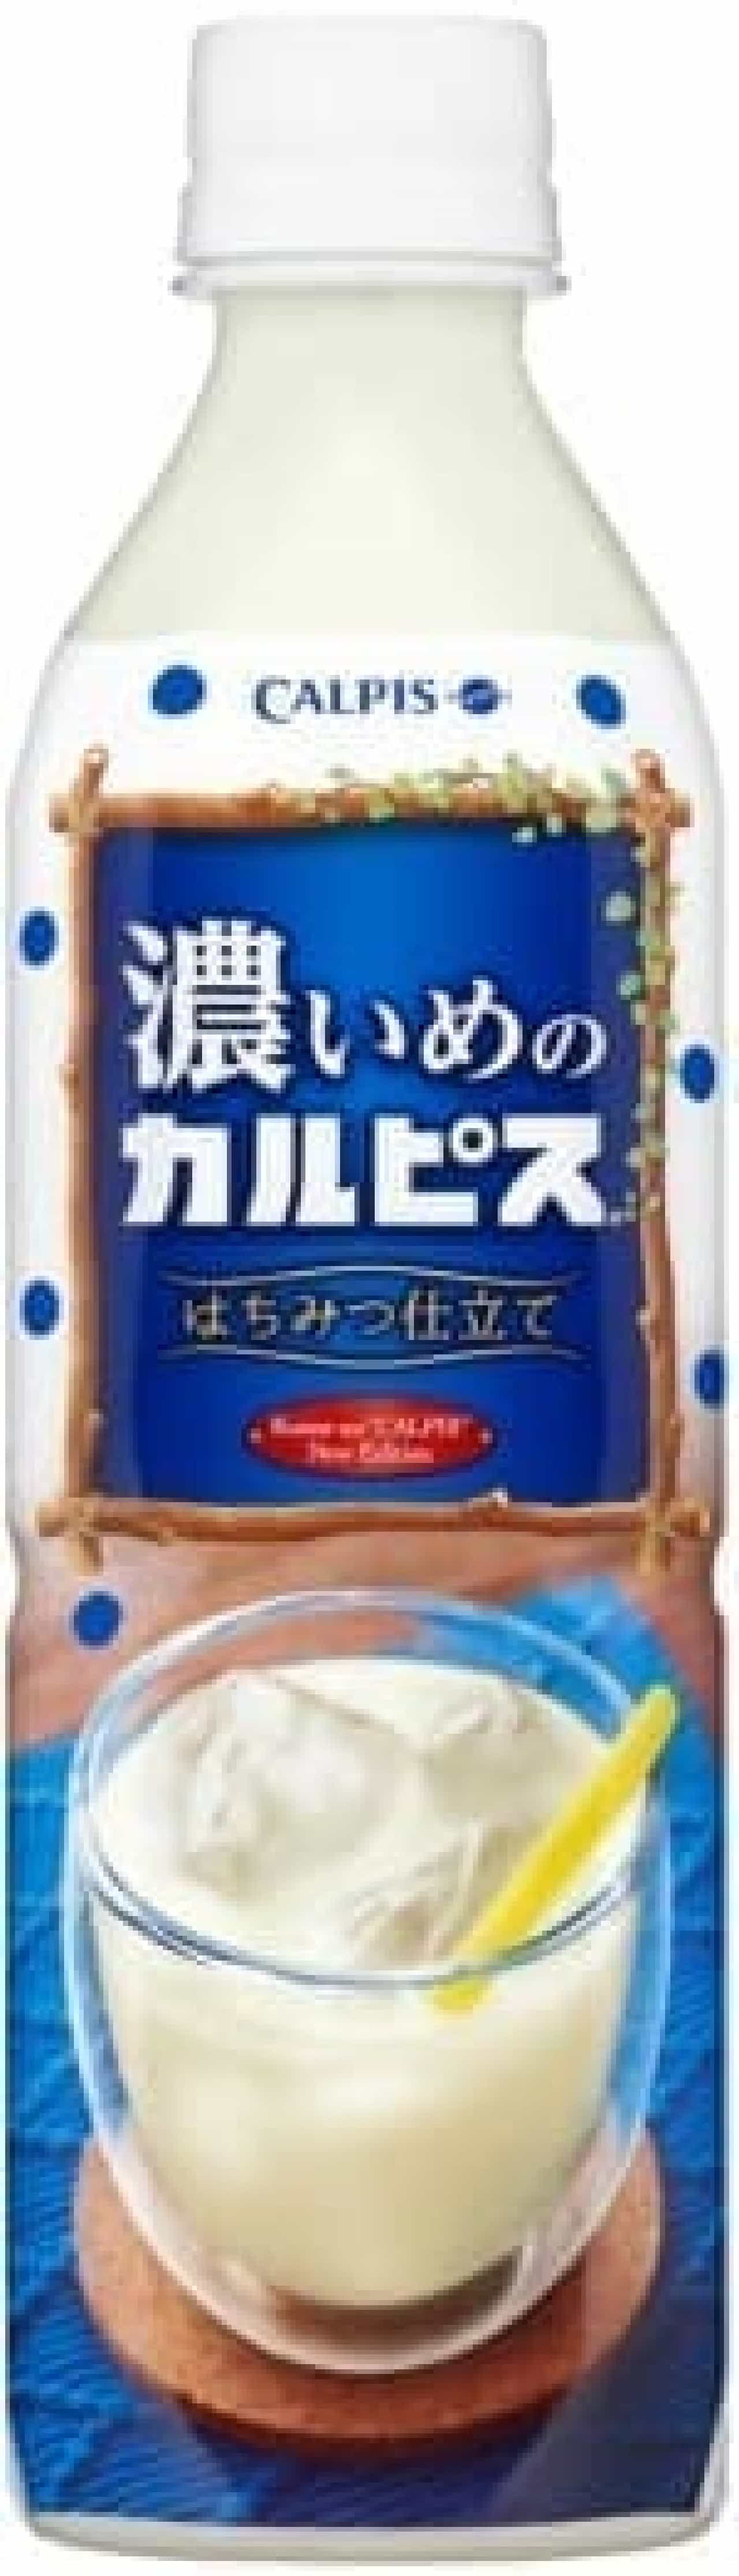 Asahi Soft Drinks "Dark" Calpis ""